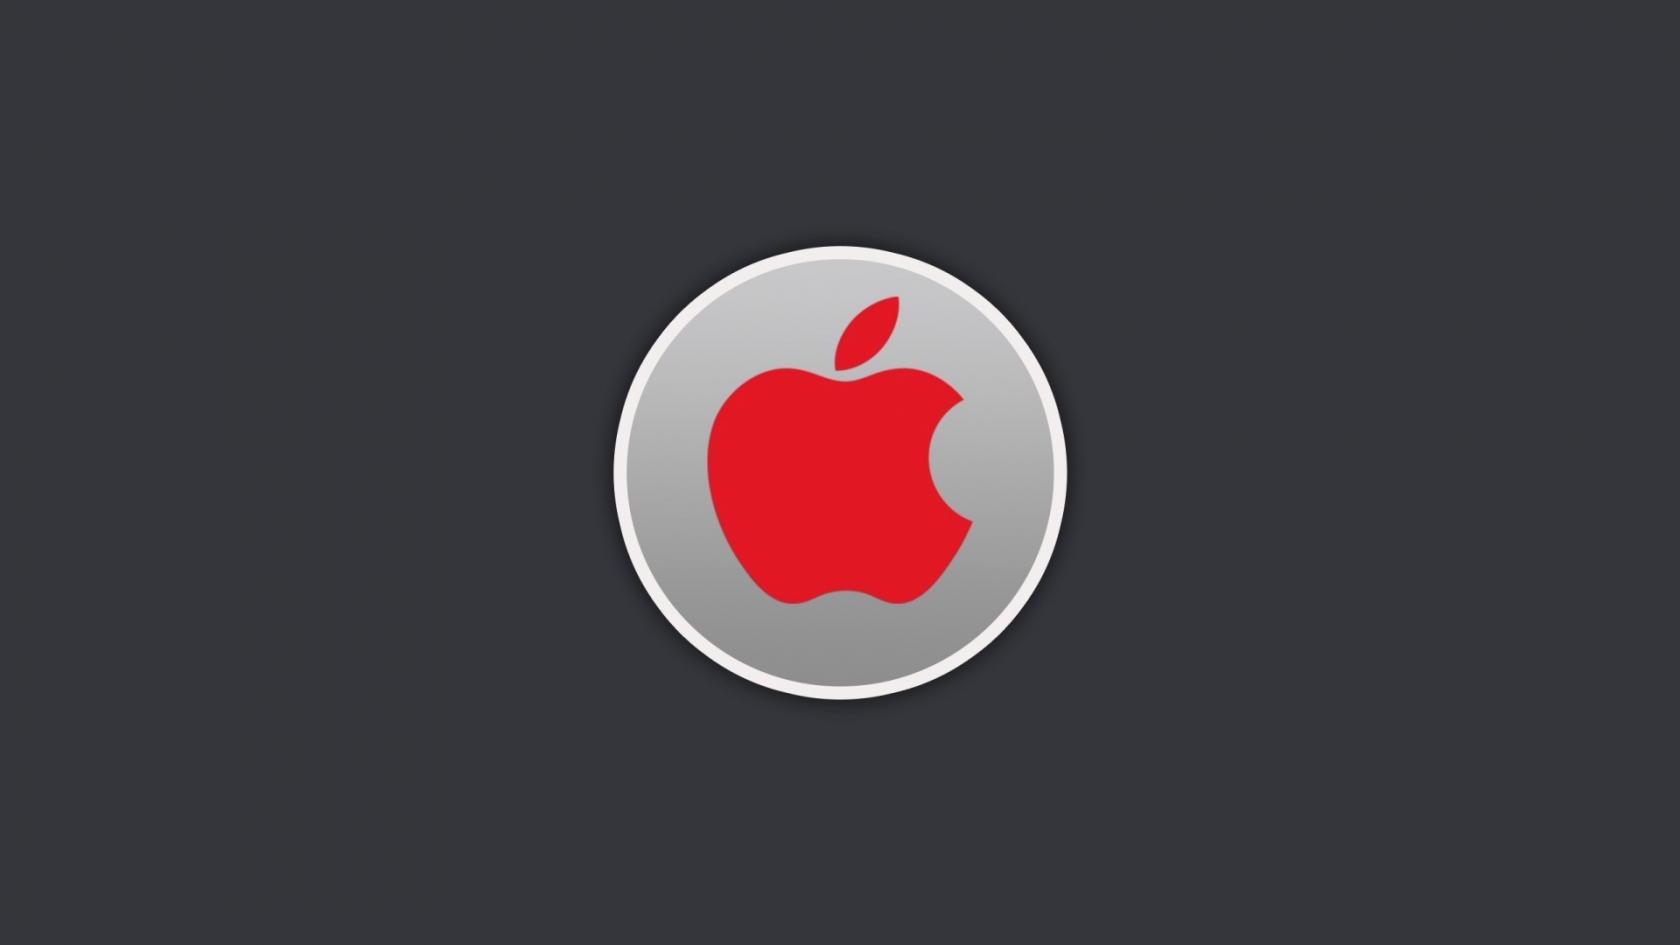 Red Apple Logo for 1680 x 945 HDTV resolution